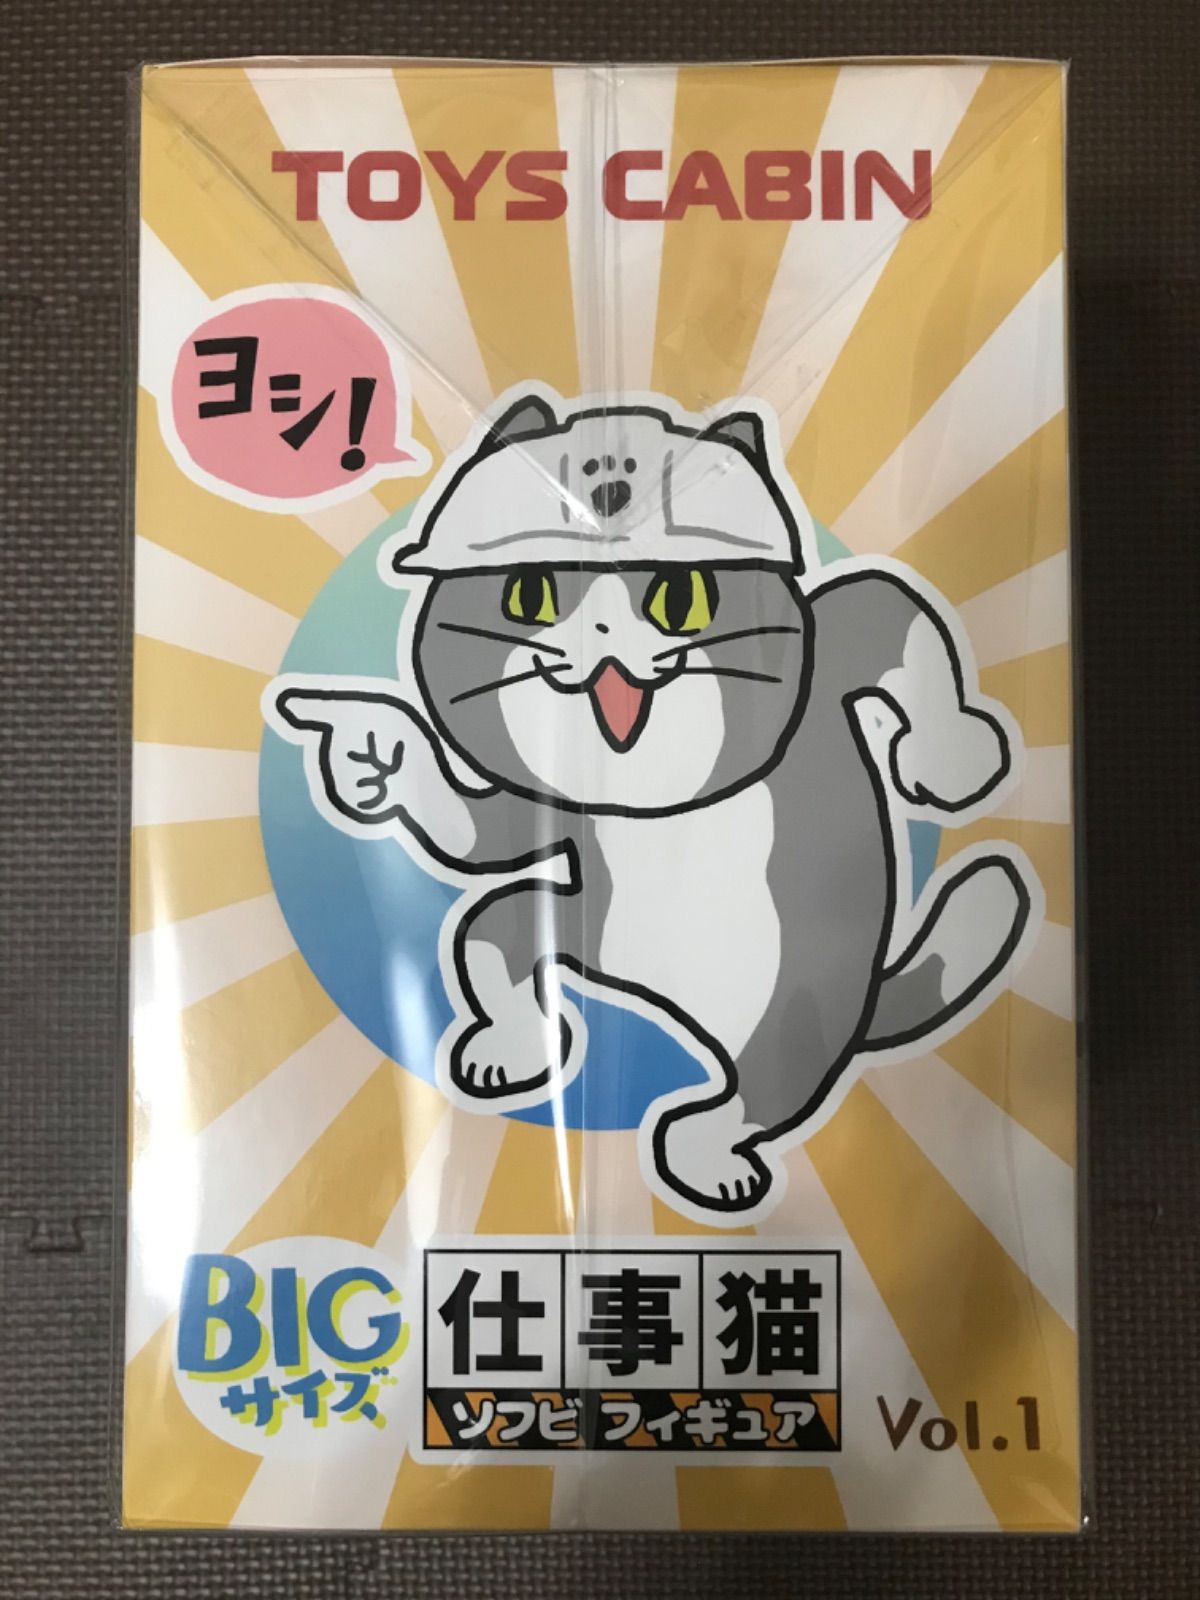 トイズキャビン 仕事猫 ソフビフィギュア ヨシ! 現場猫 くまみね Vol.1 